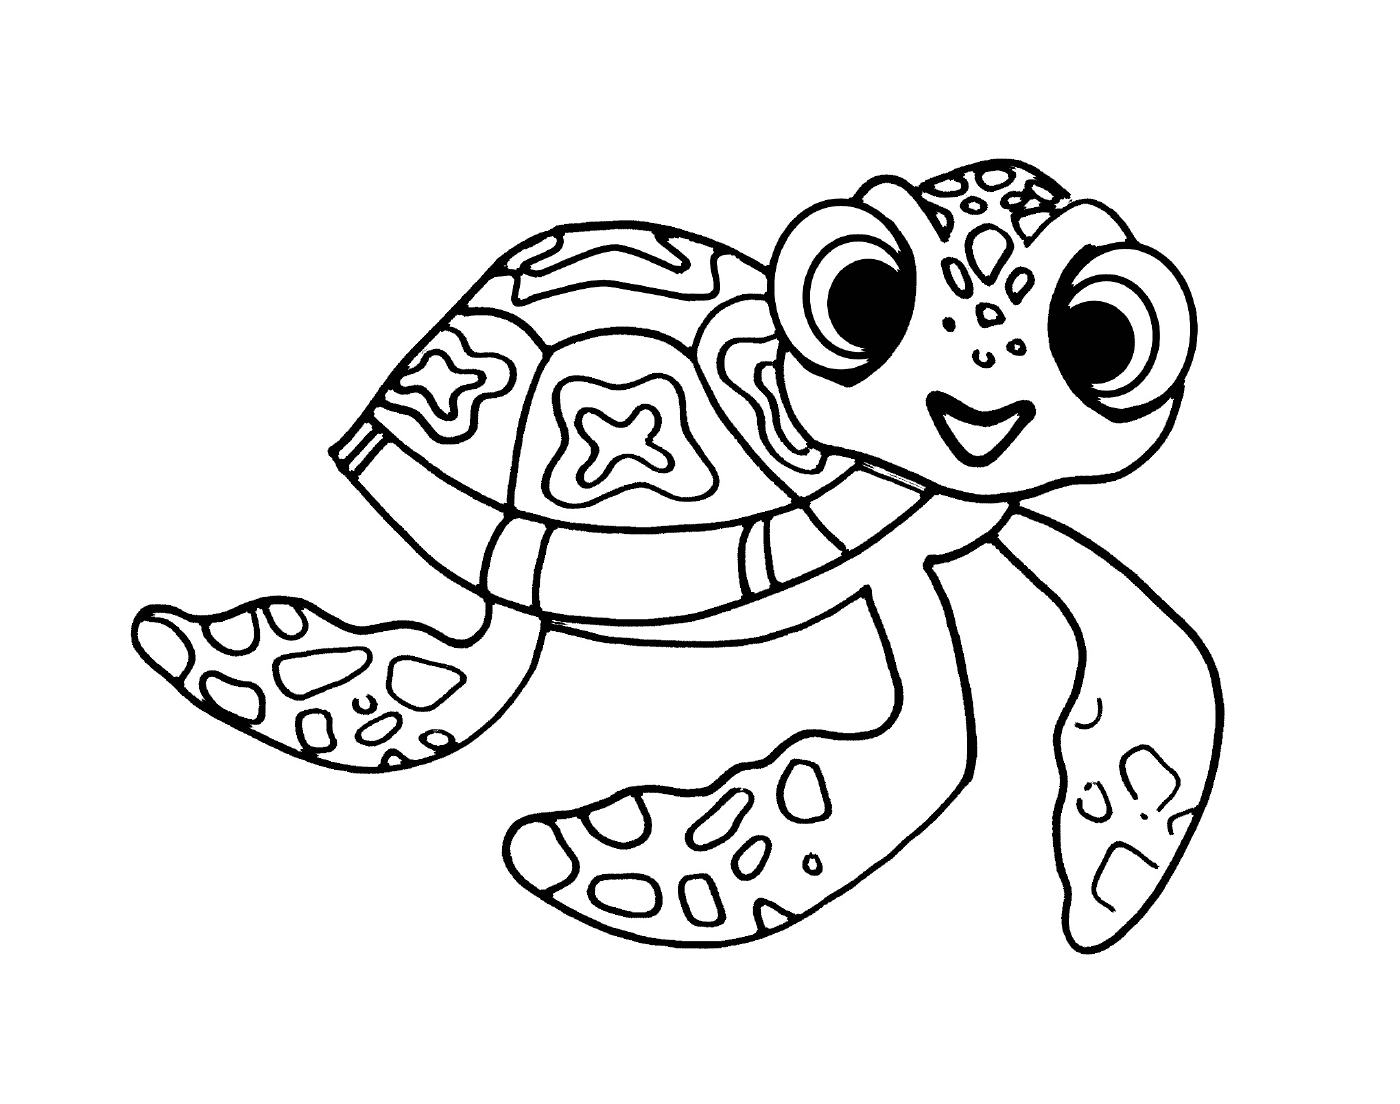  Сквайр, маленькая черепаха Немо и Дори 